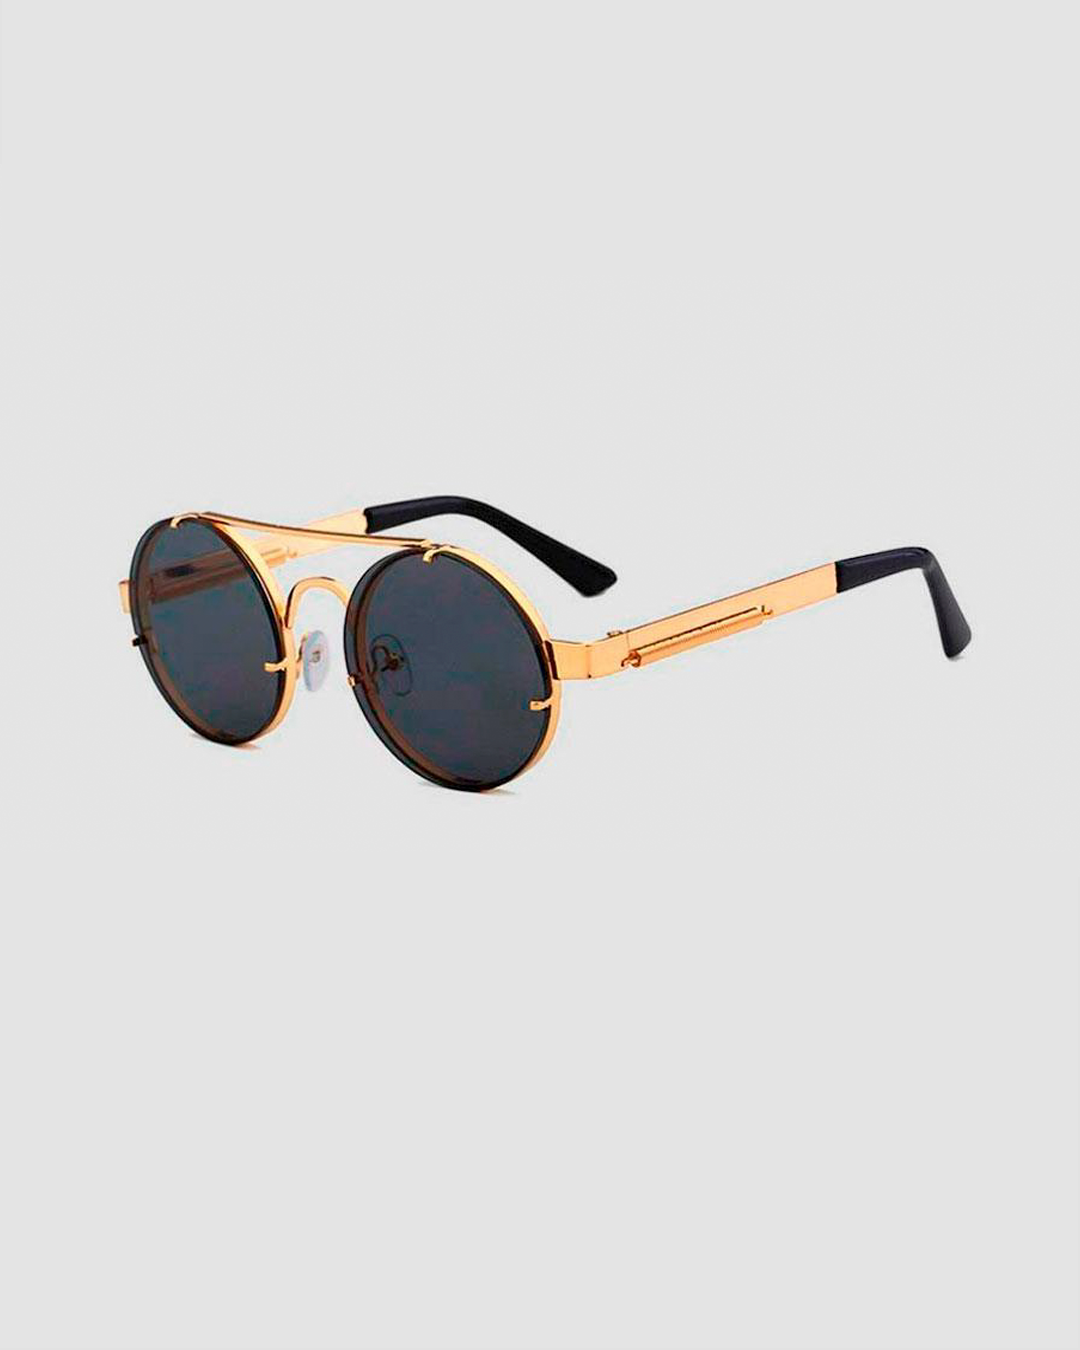 Django Sunglasses